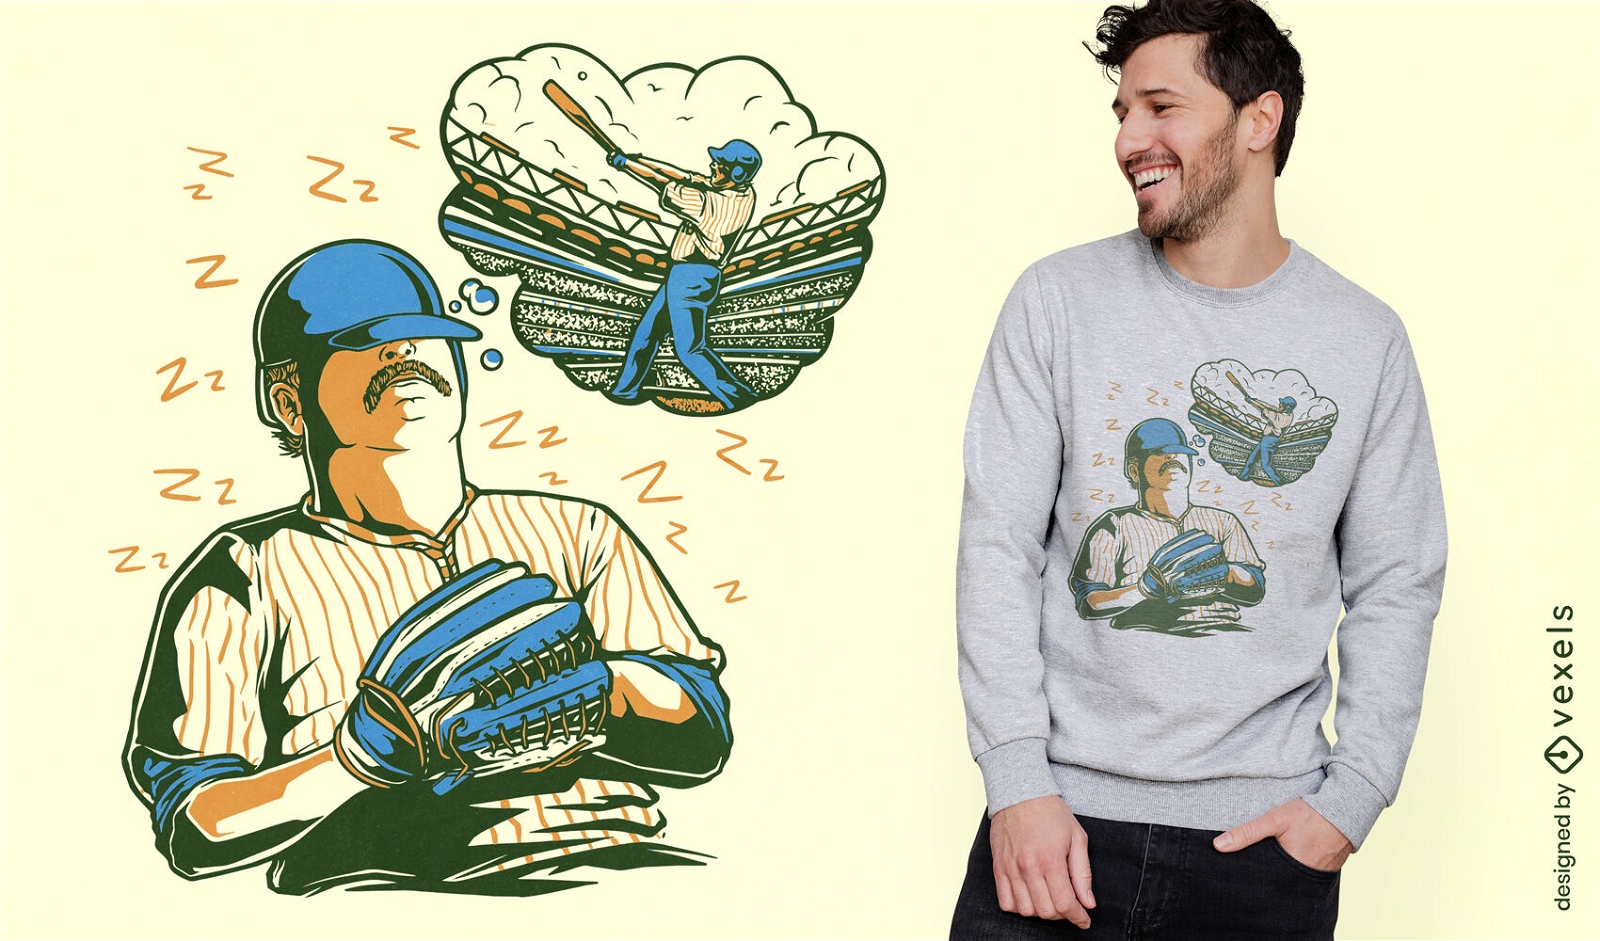 Vintage Baseball Sport T-shirt Design Vector Download